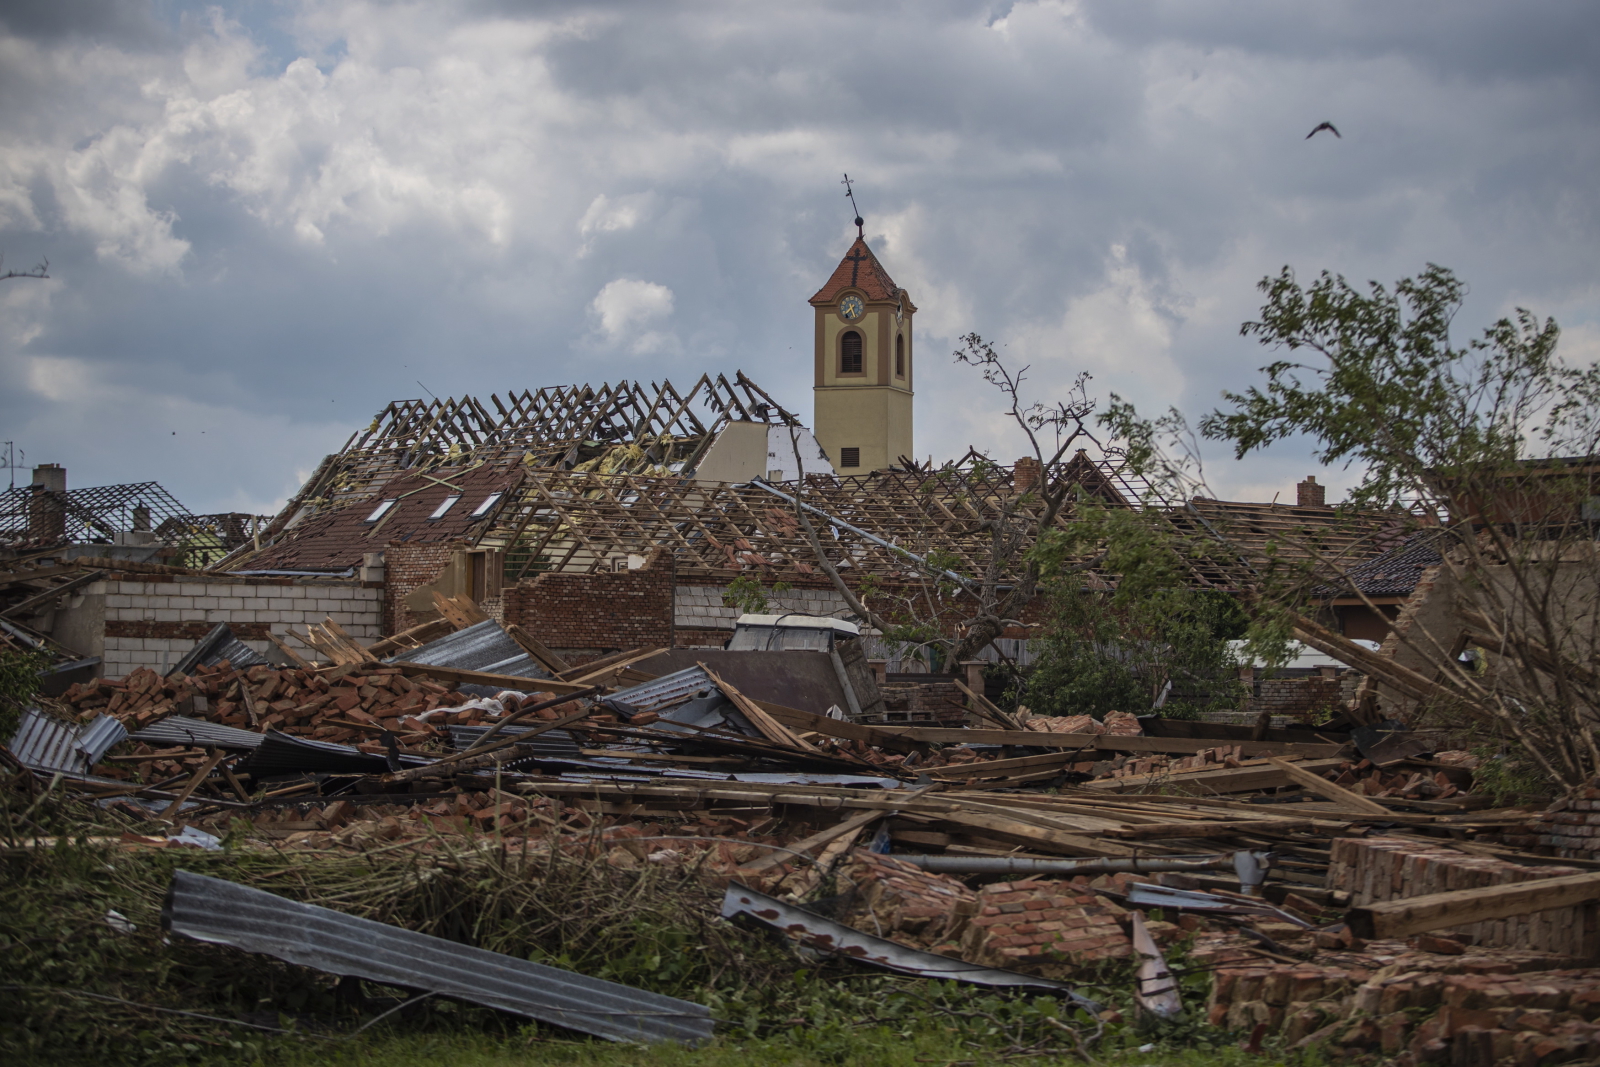 Czechy, zniszczenia po tornado  EPA/MARTIN DIVISEK 